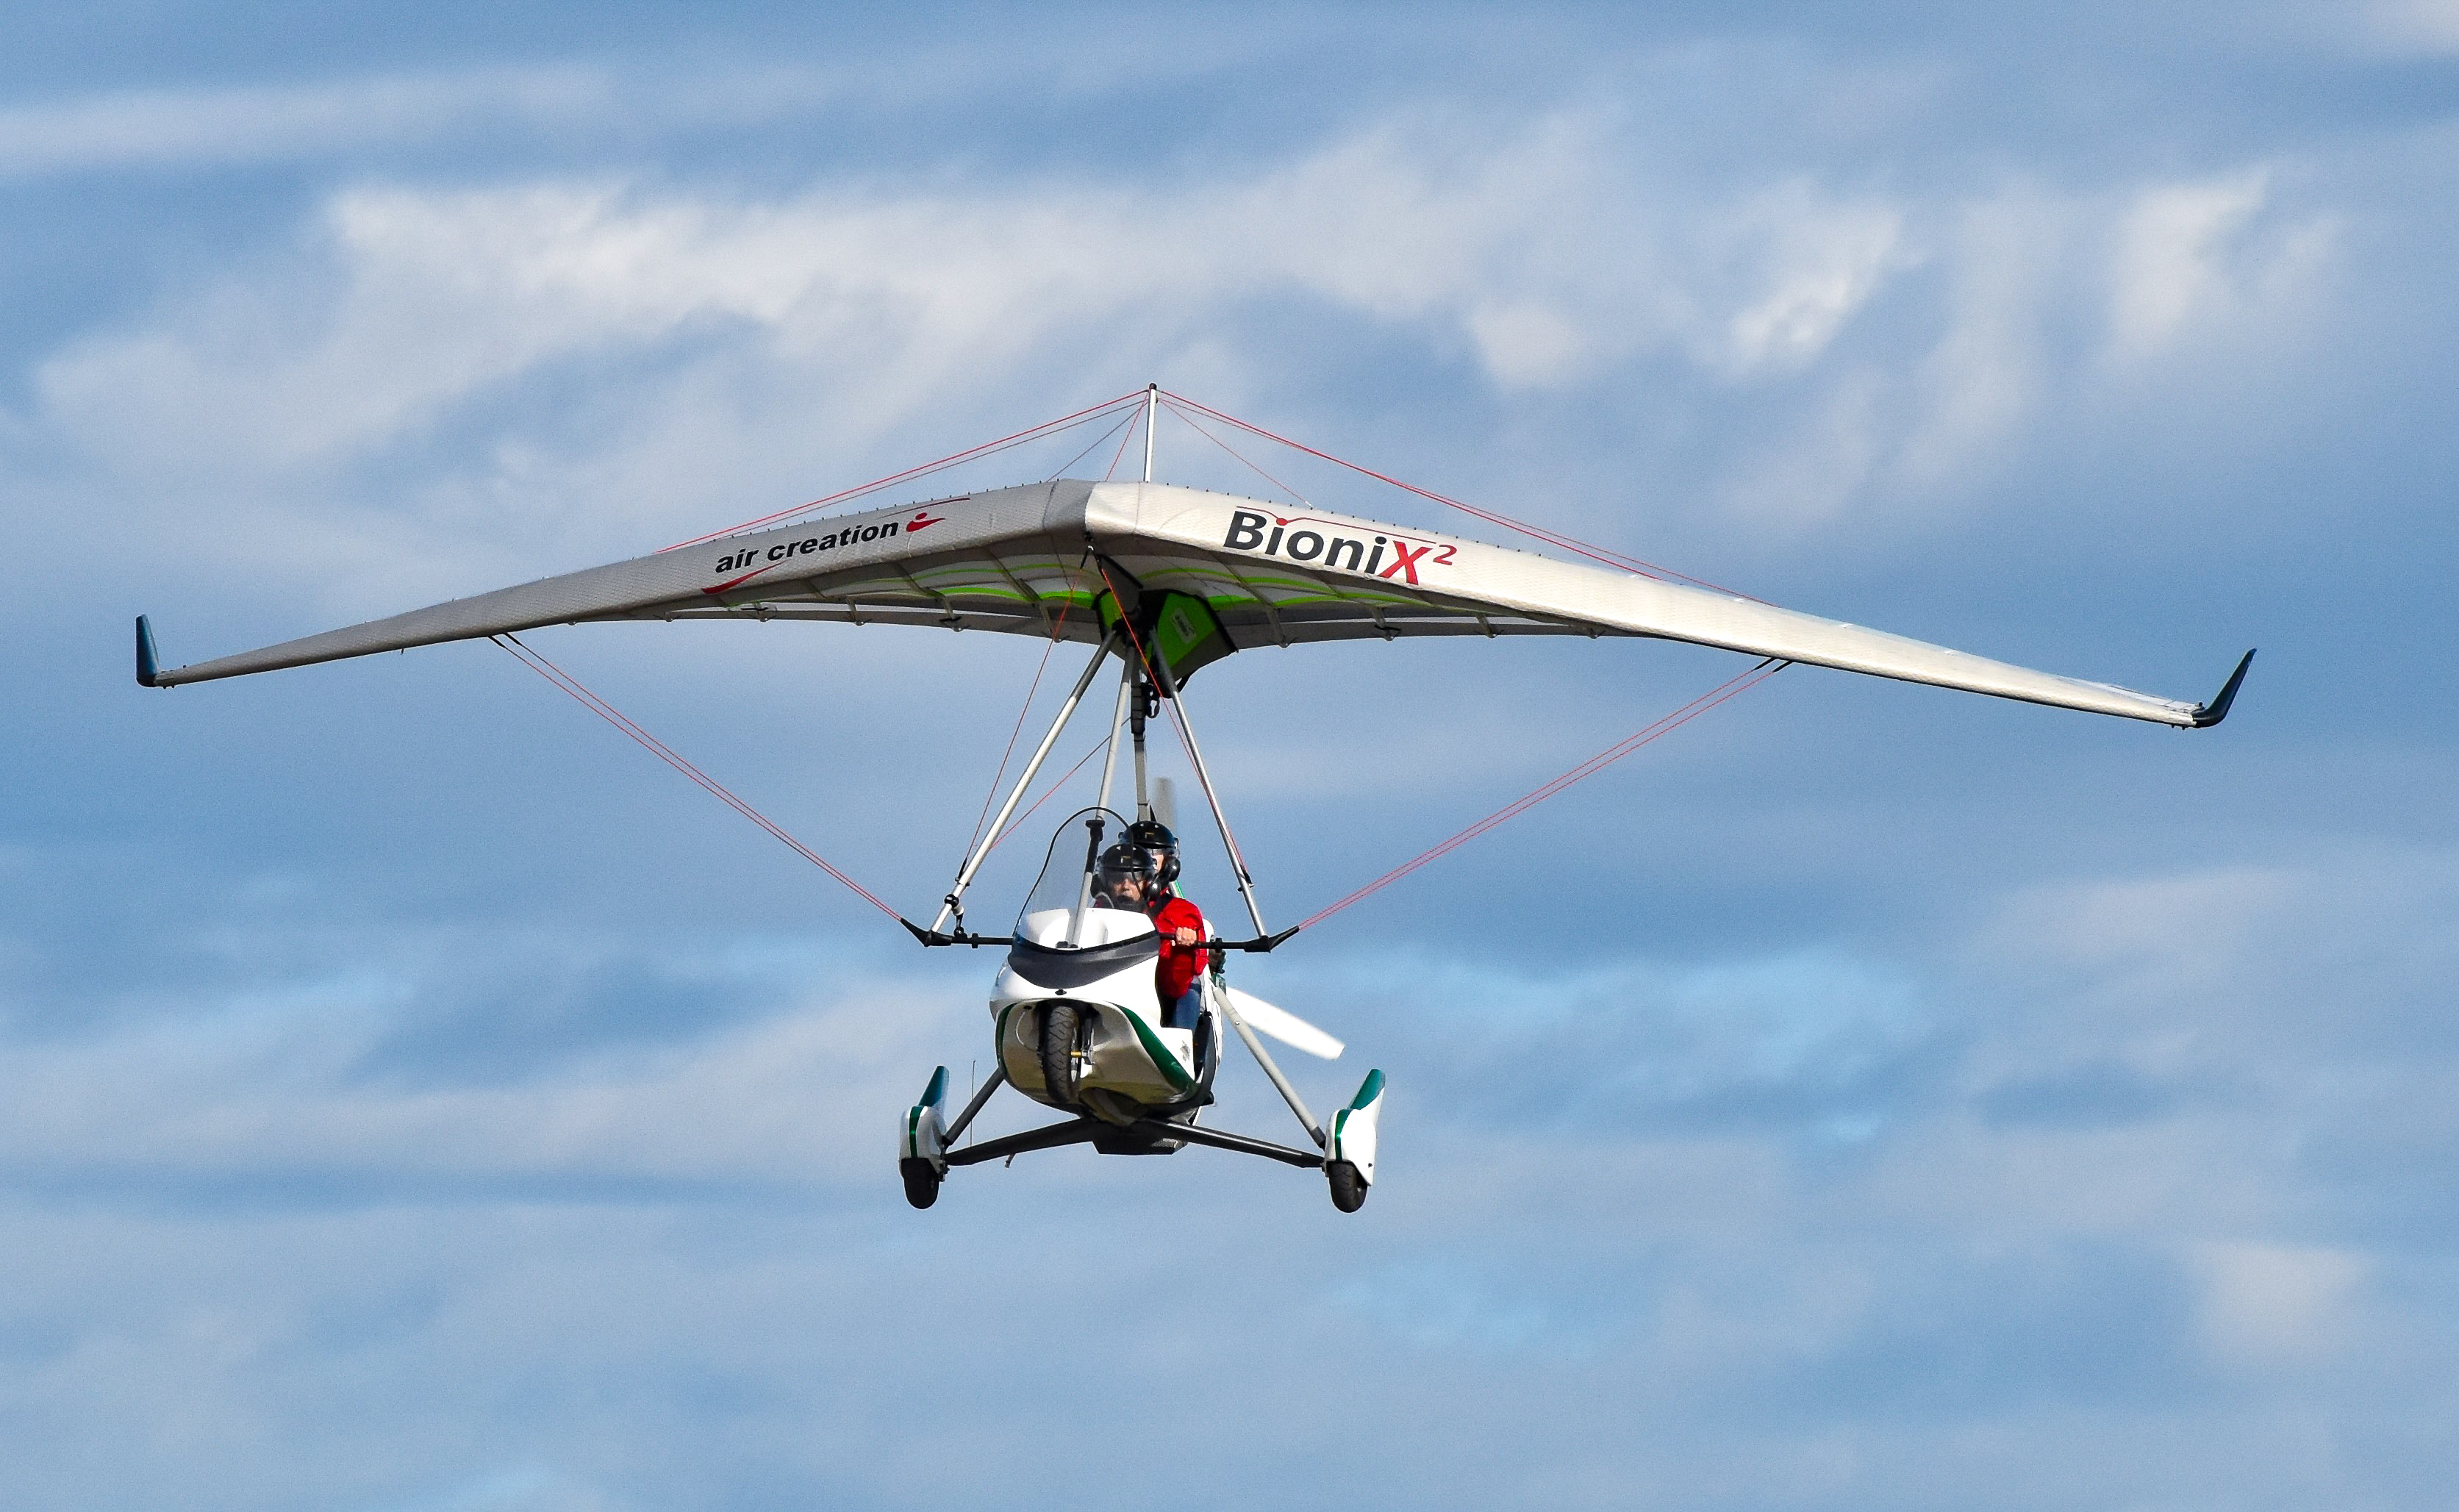 fly/en-vol-bionix2-tanarg-neo-en-vol-in-fly-ulm-pendulaire-ultralight-trike-wings-9.jpg